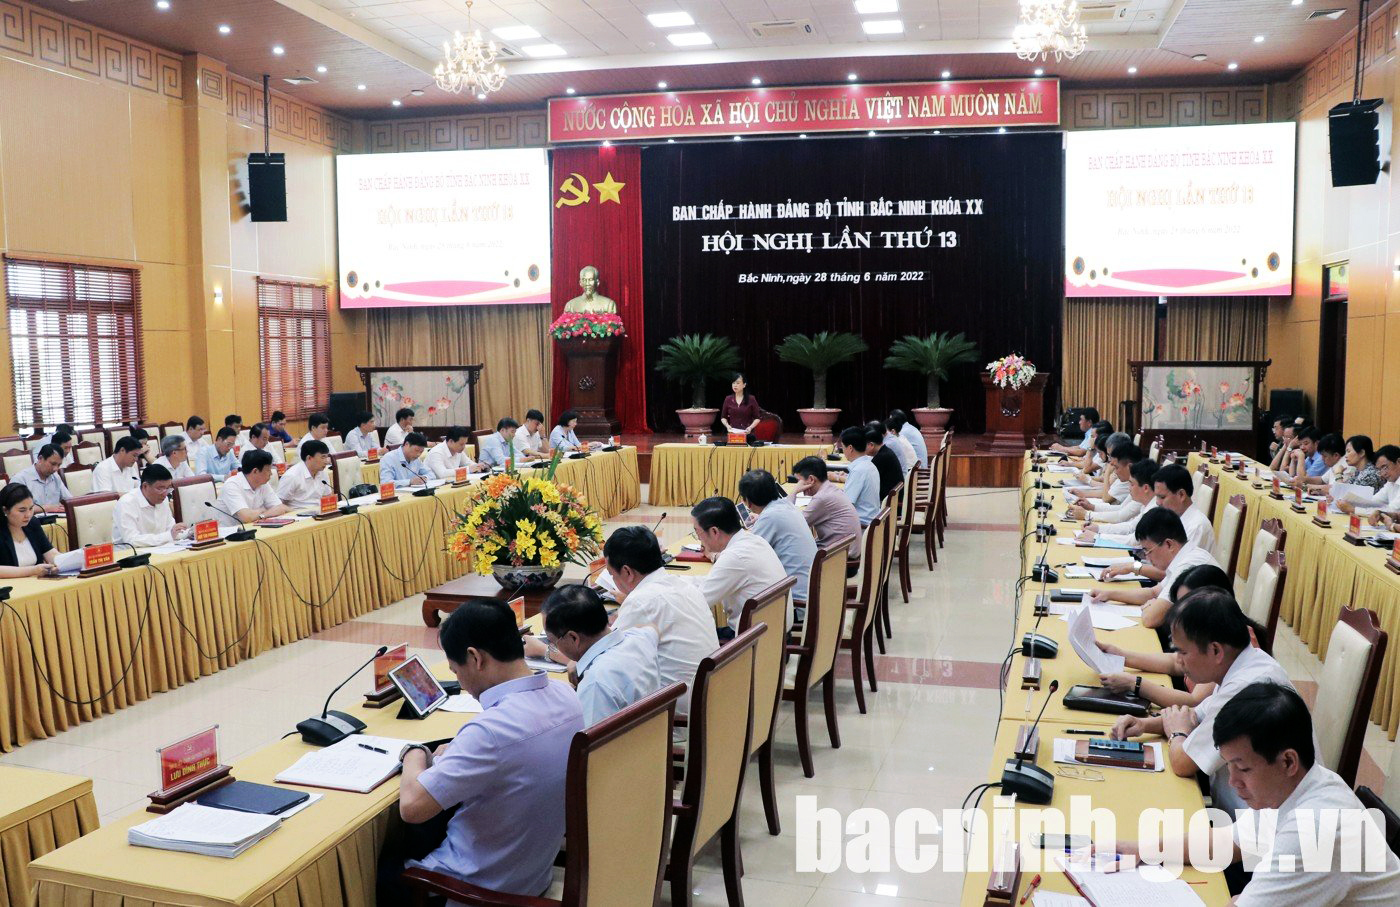 Hội nghị lần thứ 13, Ban Chấp hành Đảng bộ tỉnh Bắc Ninh khóa XX